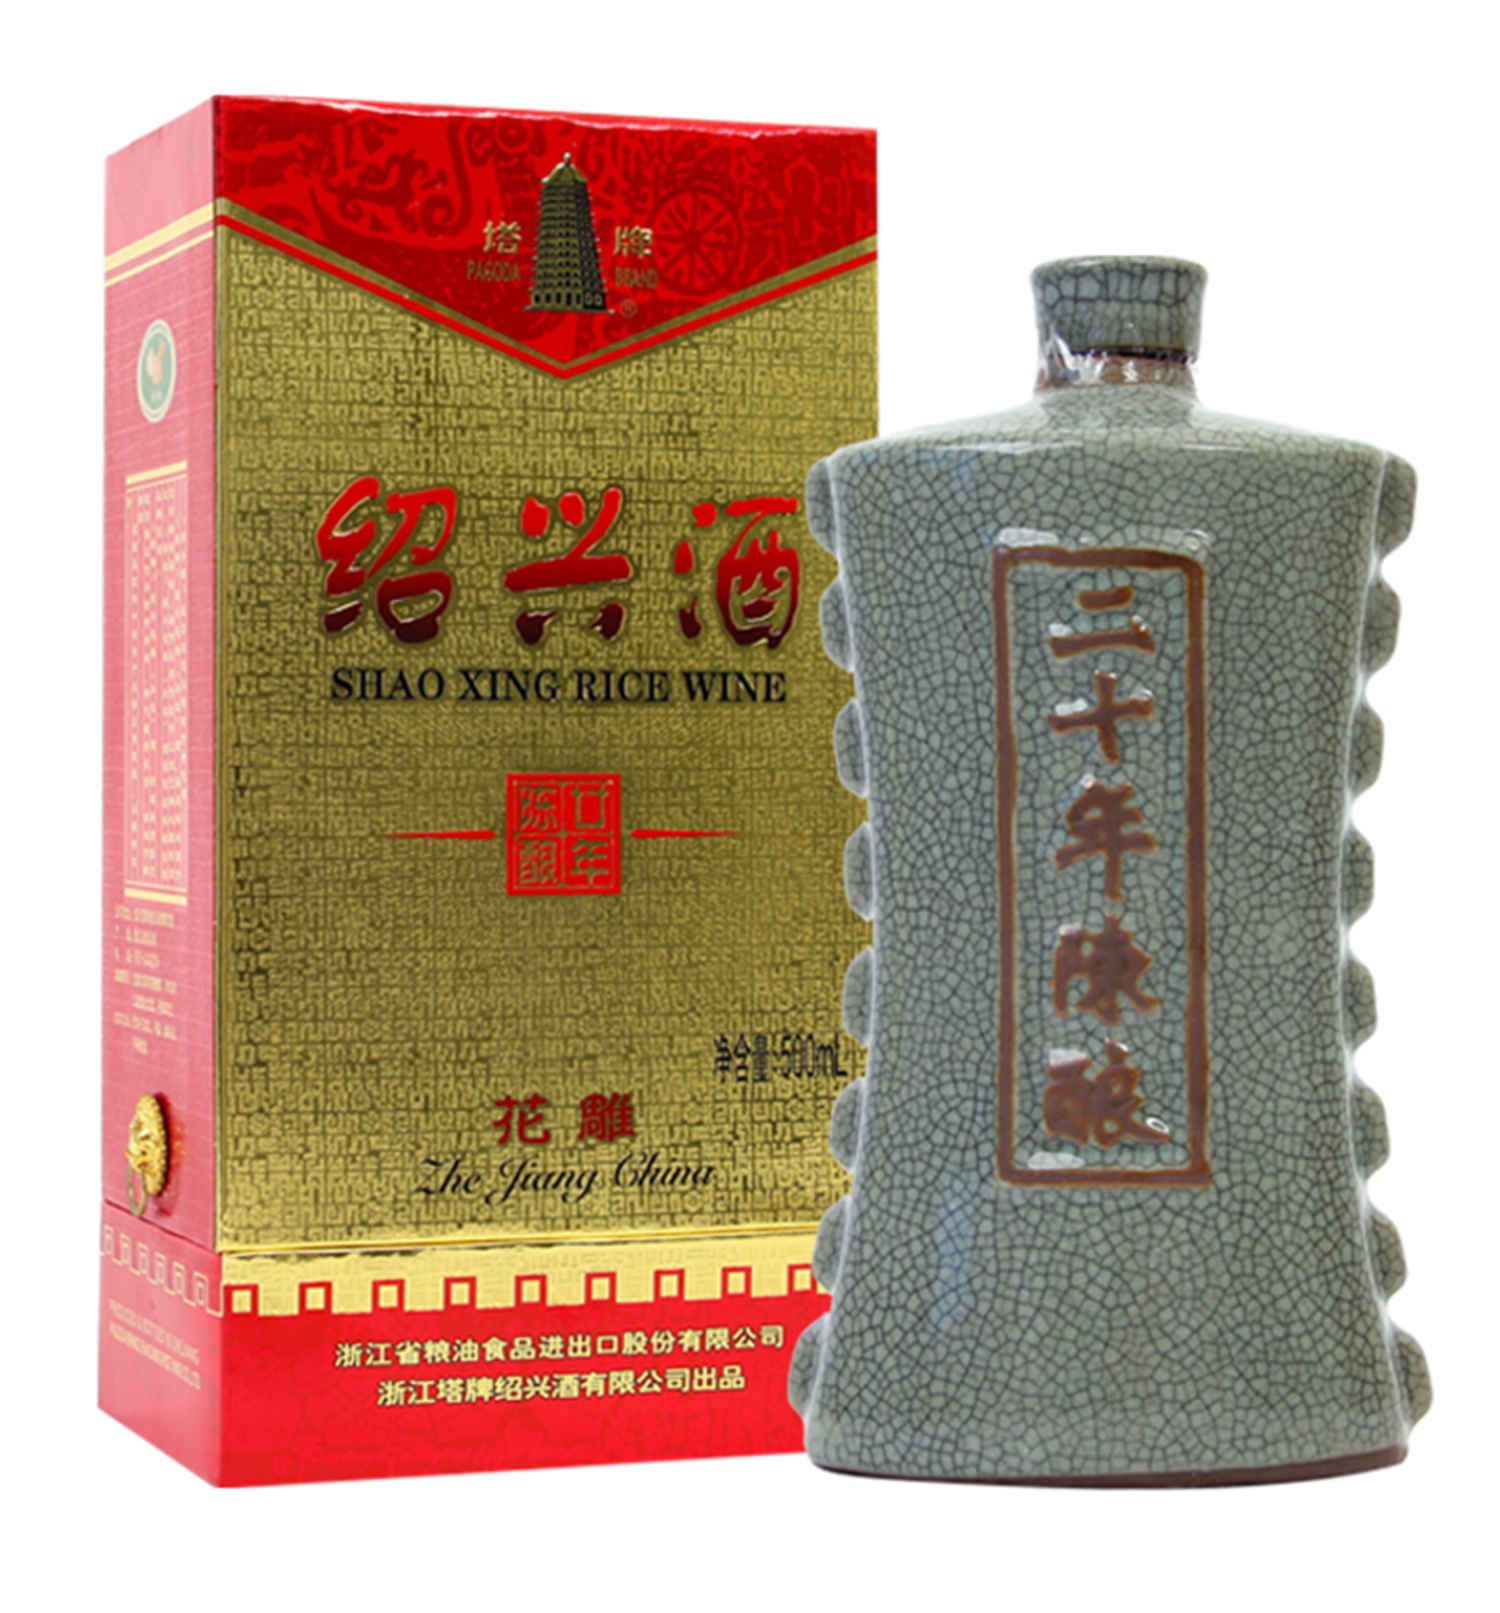 塔牌二十年陈绍兴酒酿花雕Pagoda Shao Xing Rice Wine 20Yr 500ml $33 